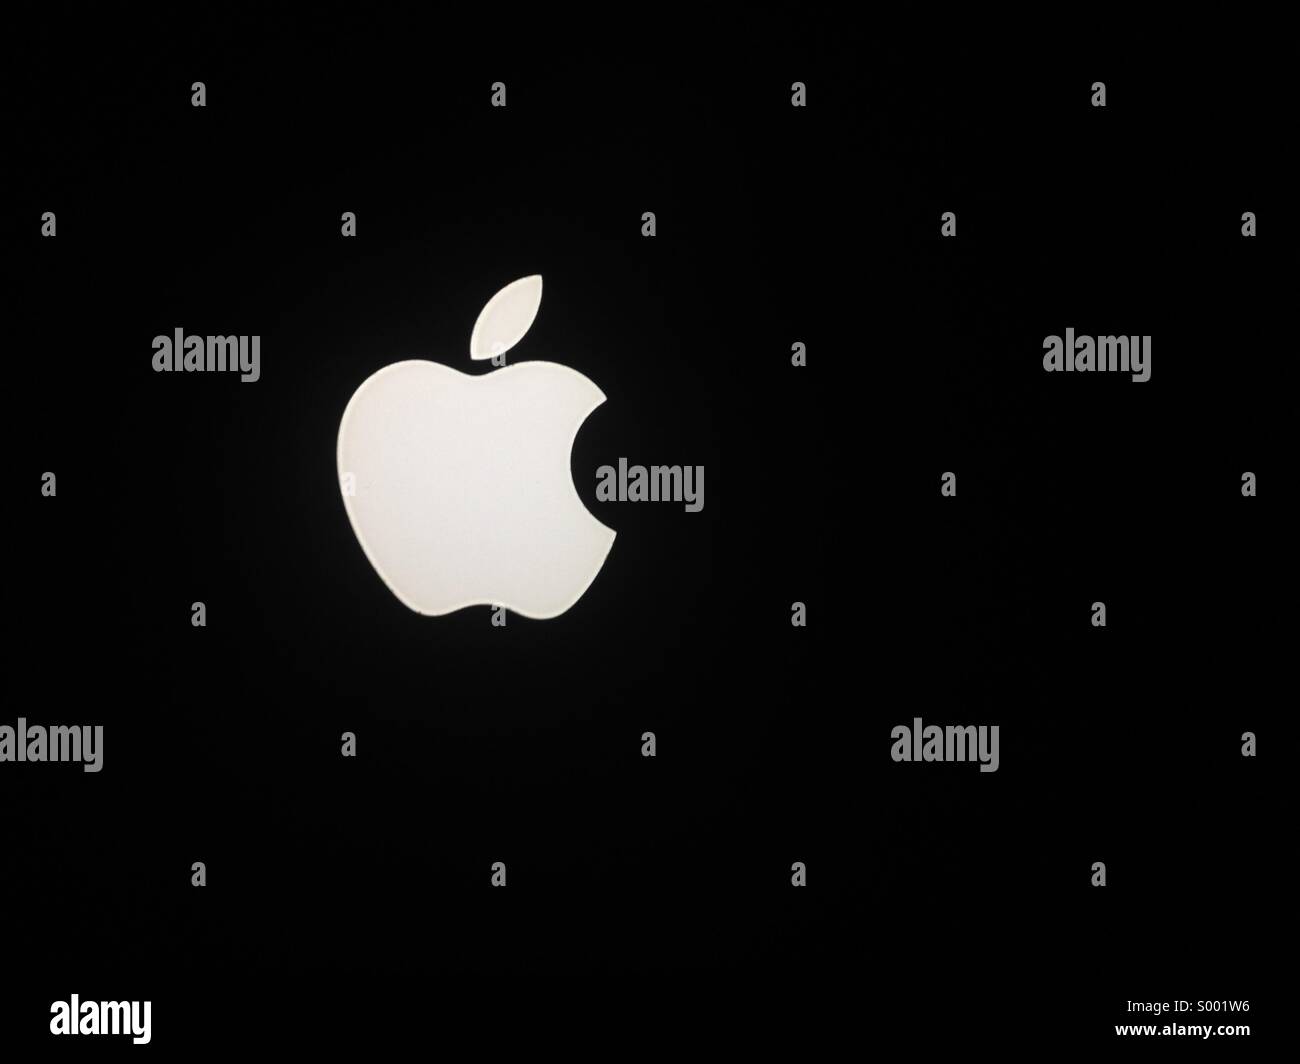 Apple logo on black background Stock Photo